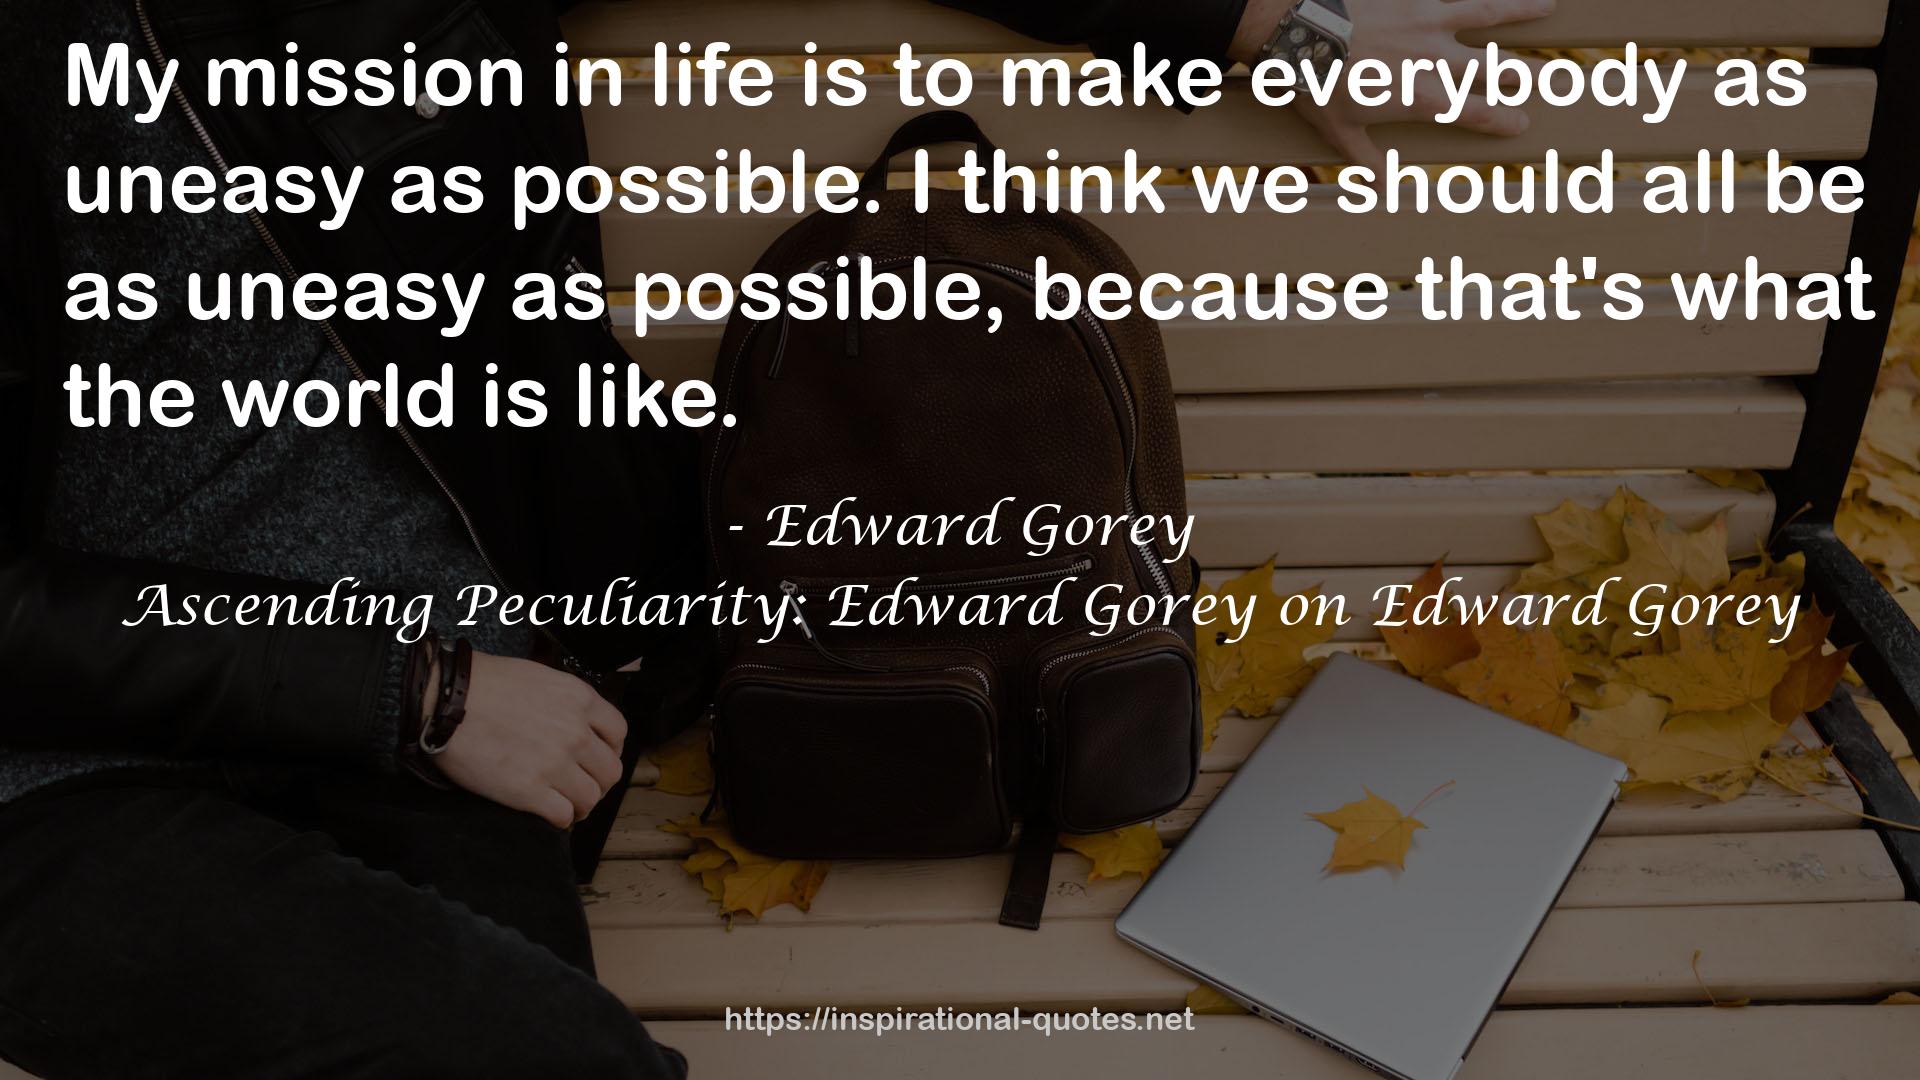 Ascending Peculiarity: Edward Gorey on Edward Gorey QUOTES